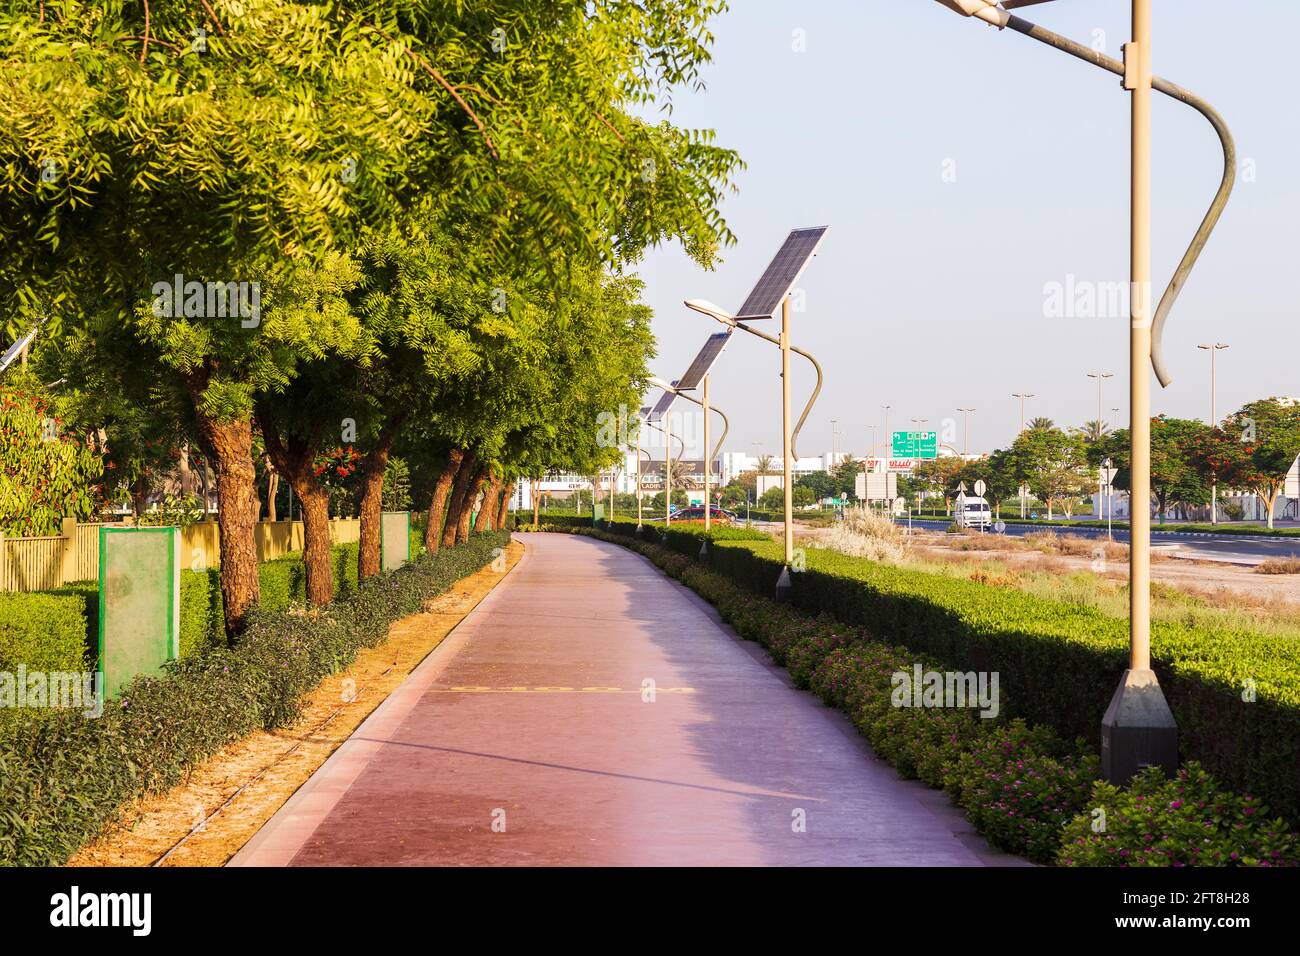 Dubai, Émirats Arabes Unis - 05.21.2021 - piste de jogging dans le parc nad Al Hamar, tôt le matin. Le poteau de lampe alimenté par des panneaux solaires peut être vu dans l'image Banque D'Images